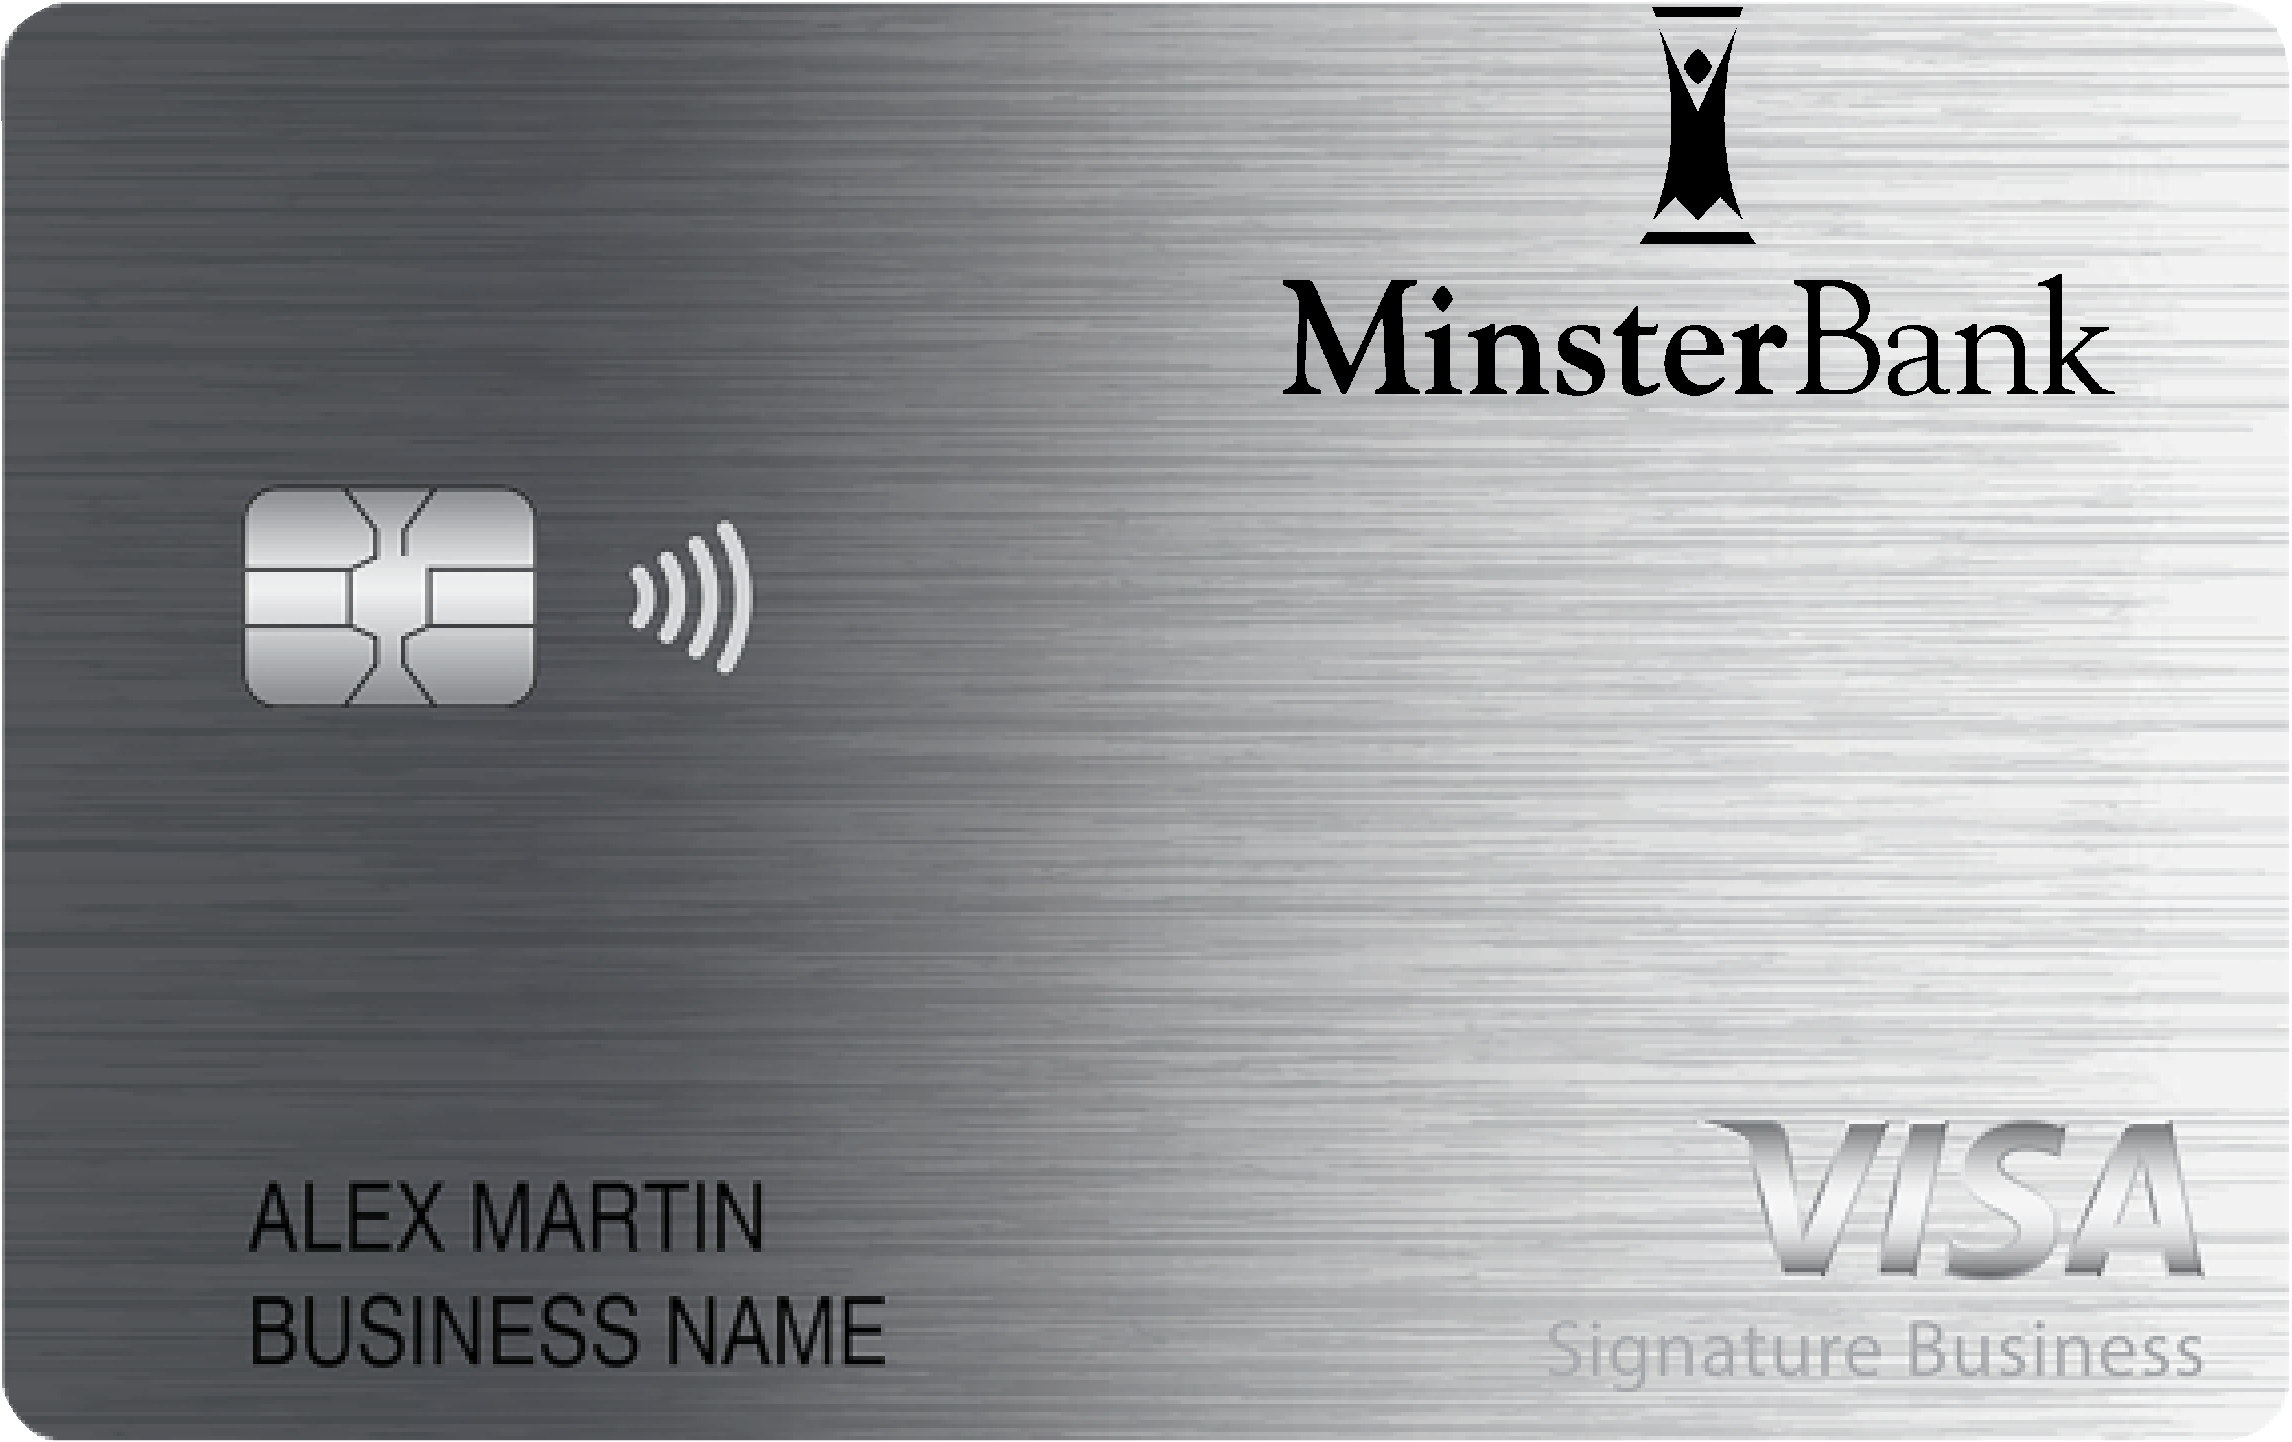 Minster Bank Smart Business Rewards Card